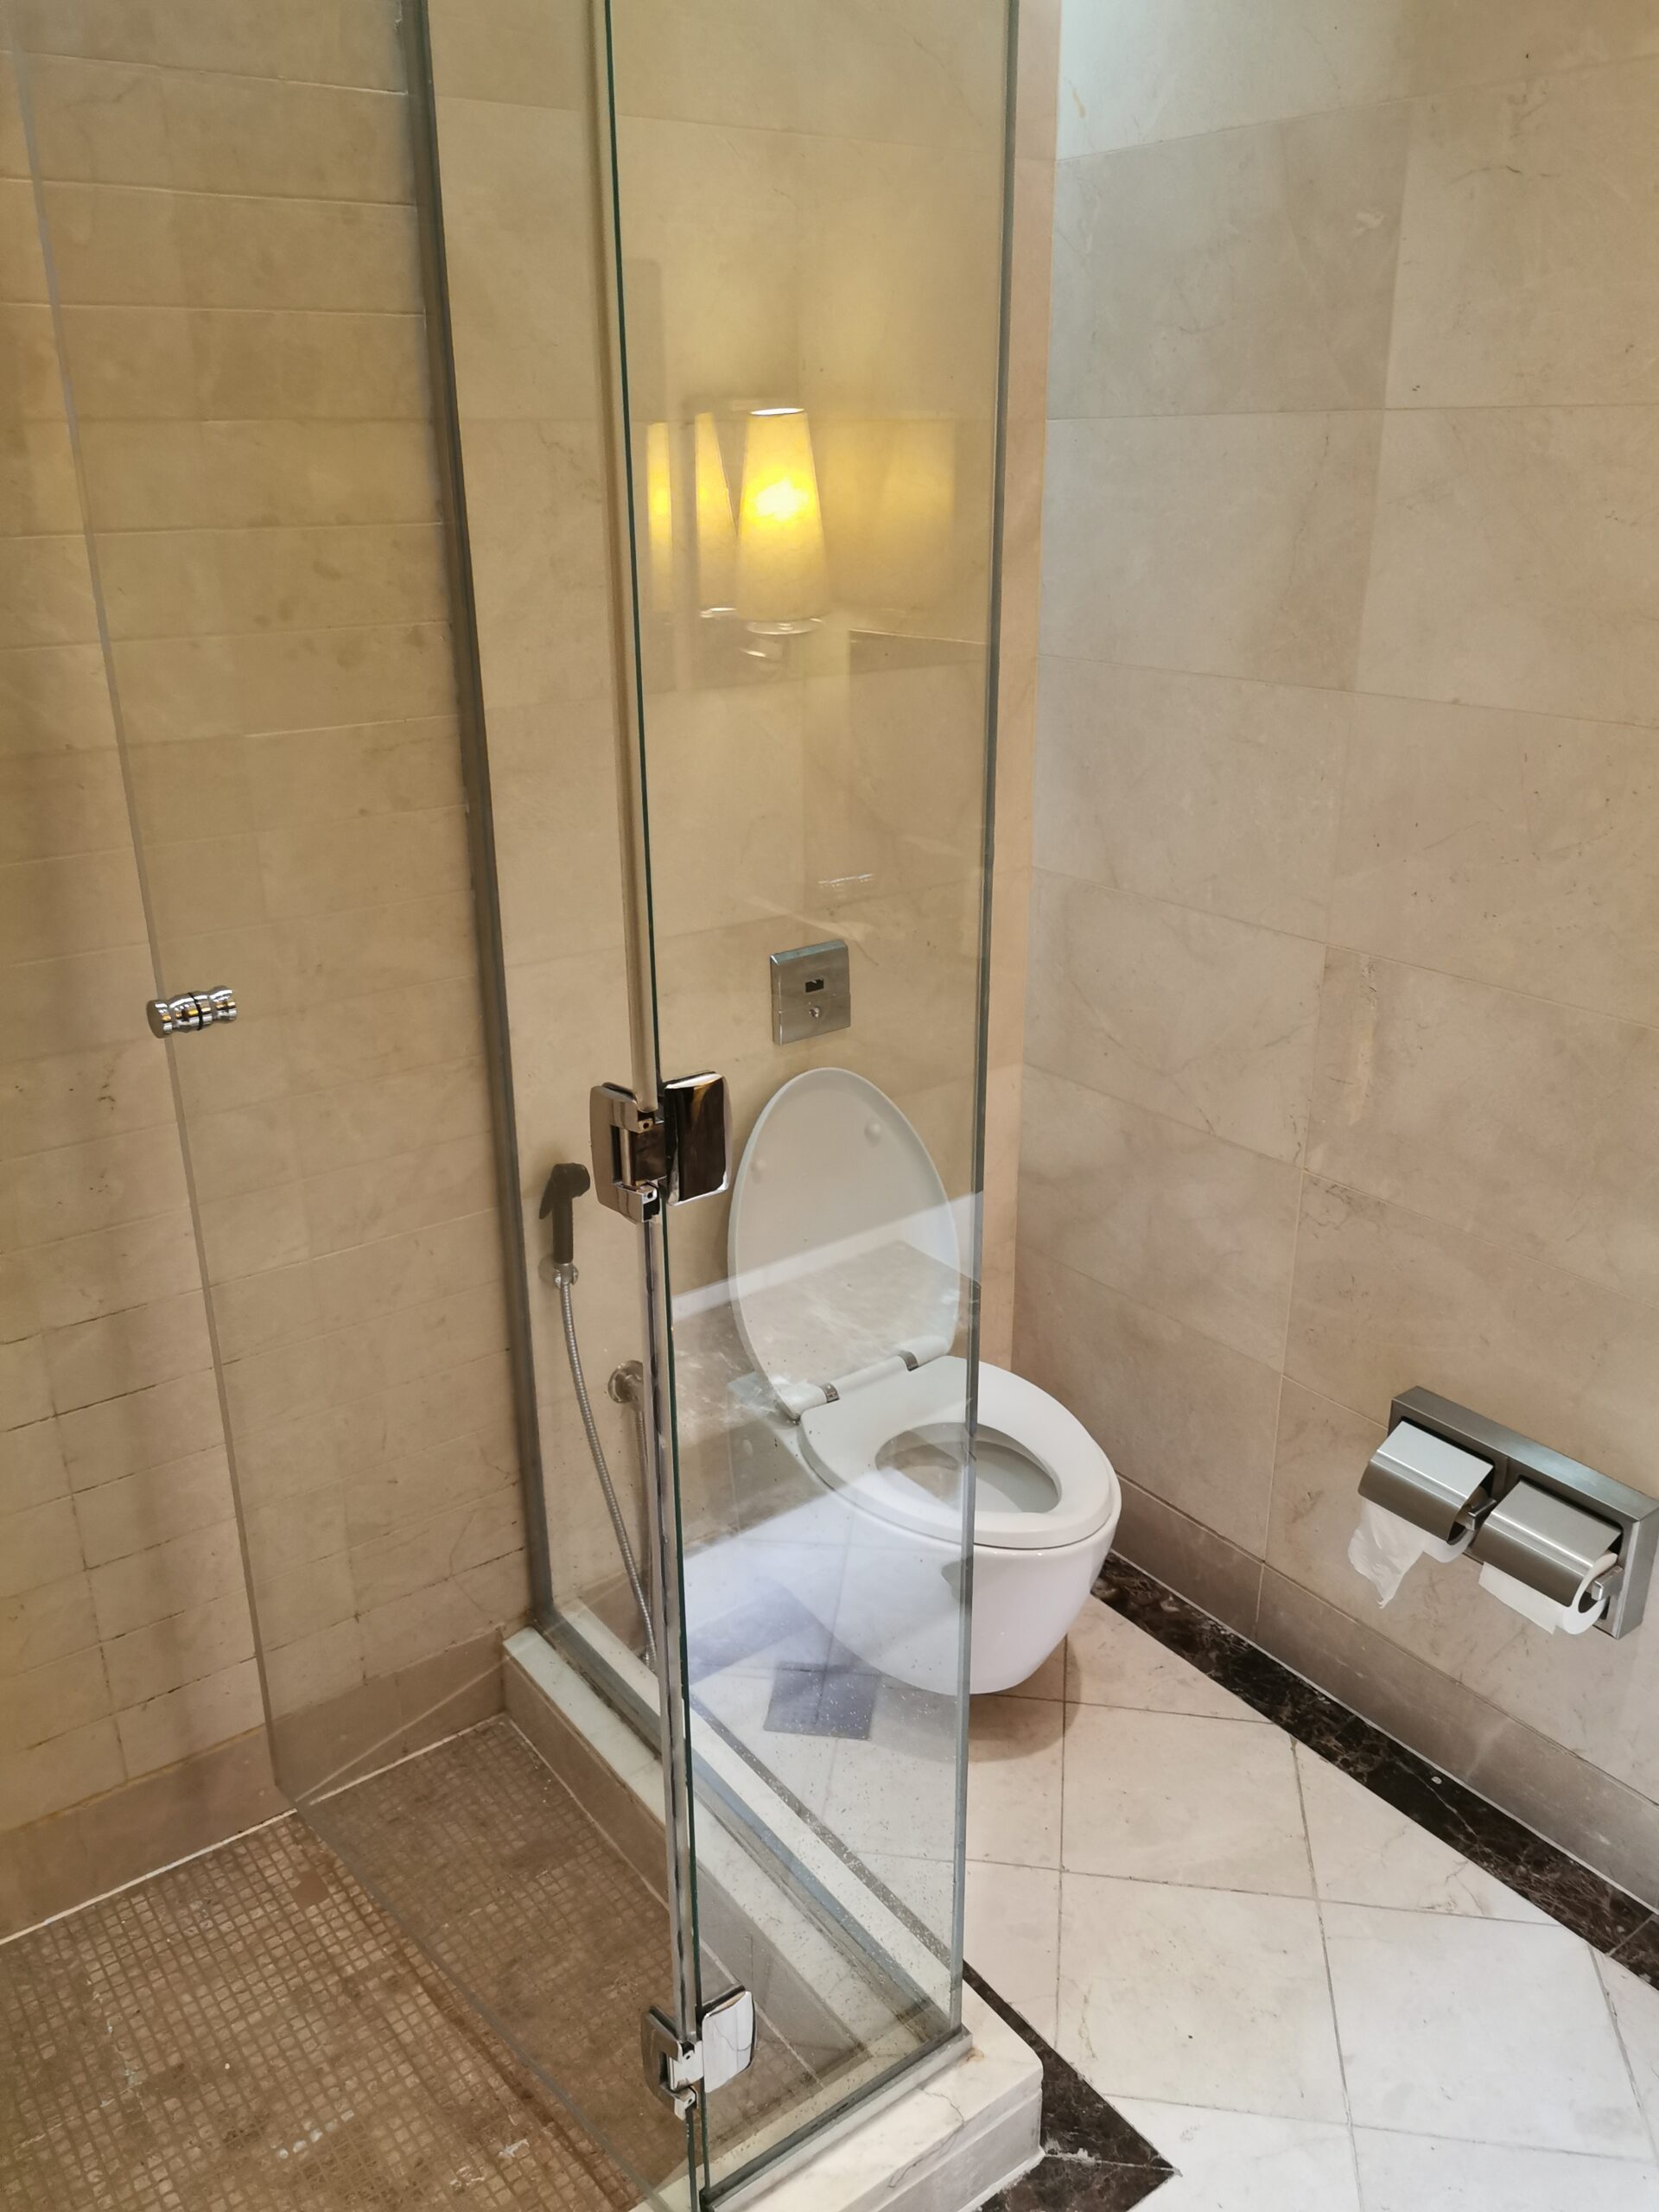 Toilette in der Emirates Lounge in Dubai